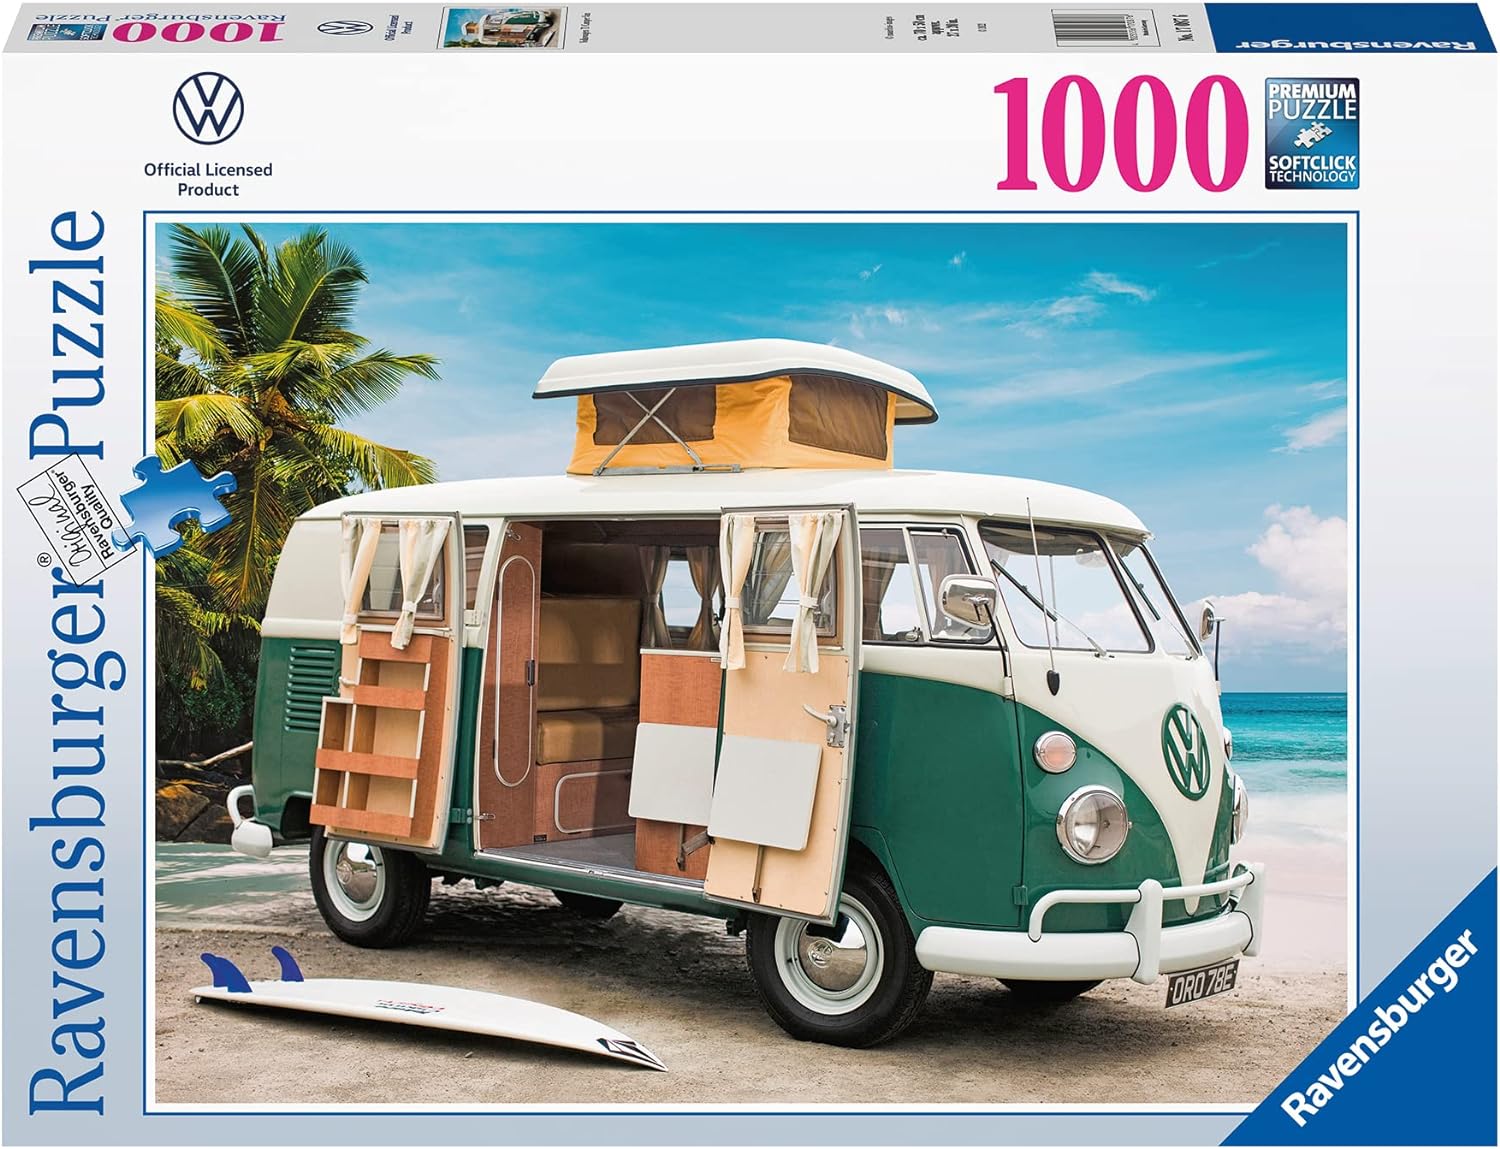 Ravensburger 1000 Piece Jigsaw Puzzle - Volkswagen VW T1 Camper Van - 170876